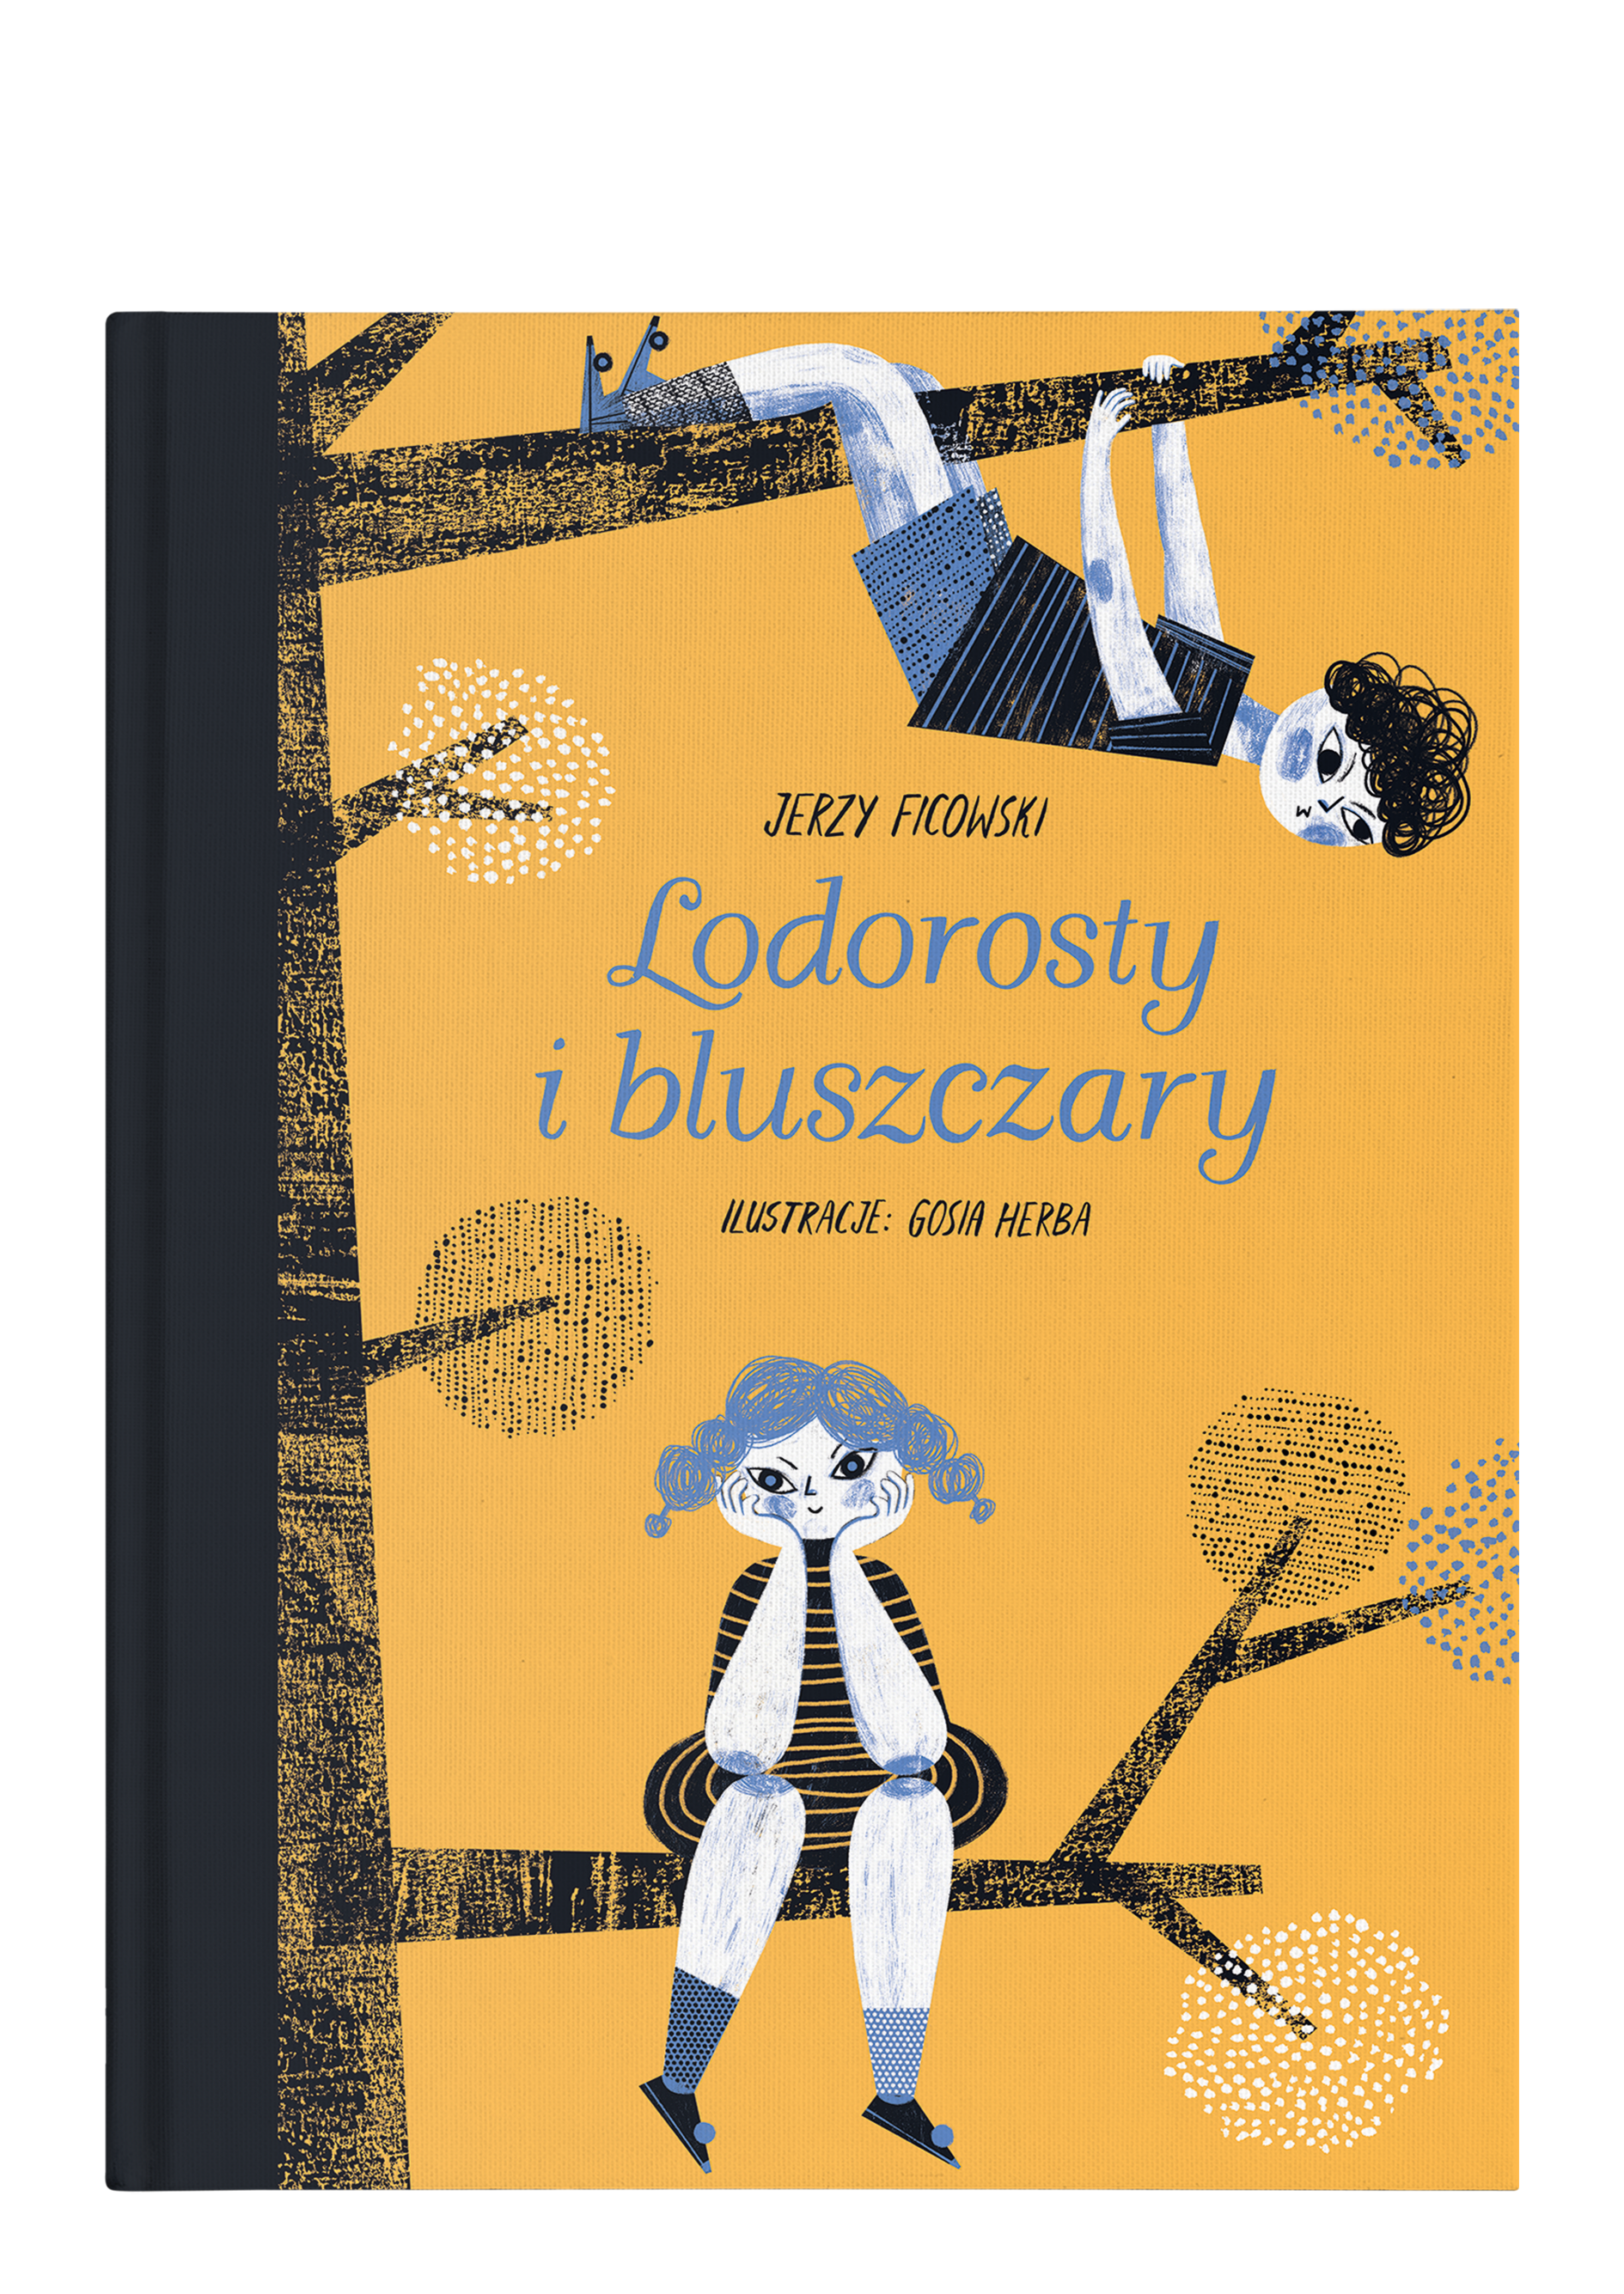 Tytuł: Lodorosty i bluszczary, autor: Jerzy Ficowski, ilustracje: Gosia Herba, Wydawnictwo Wolno